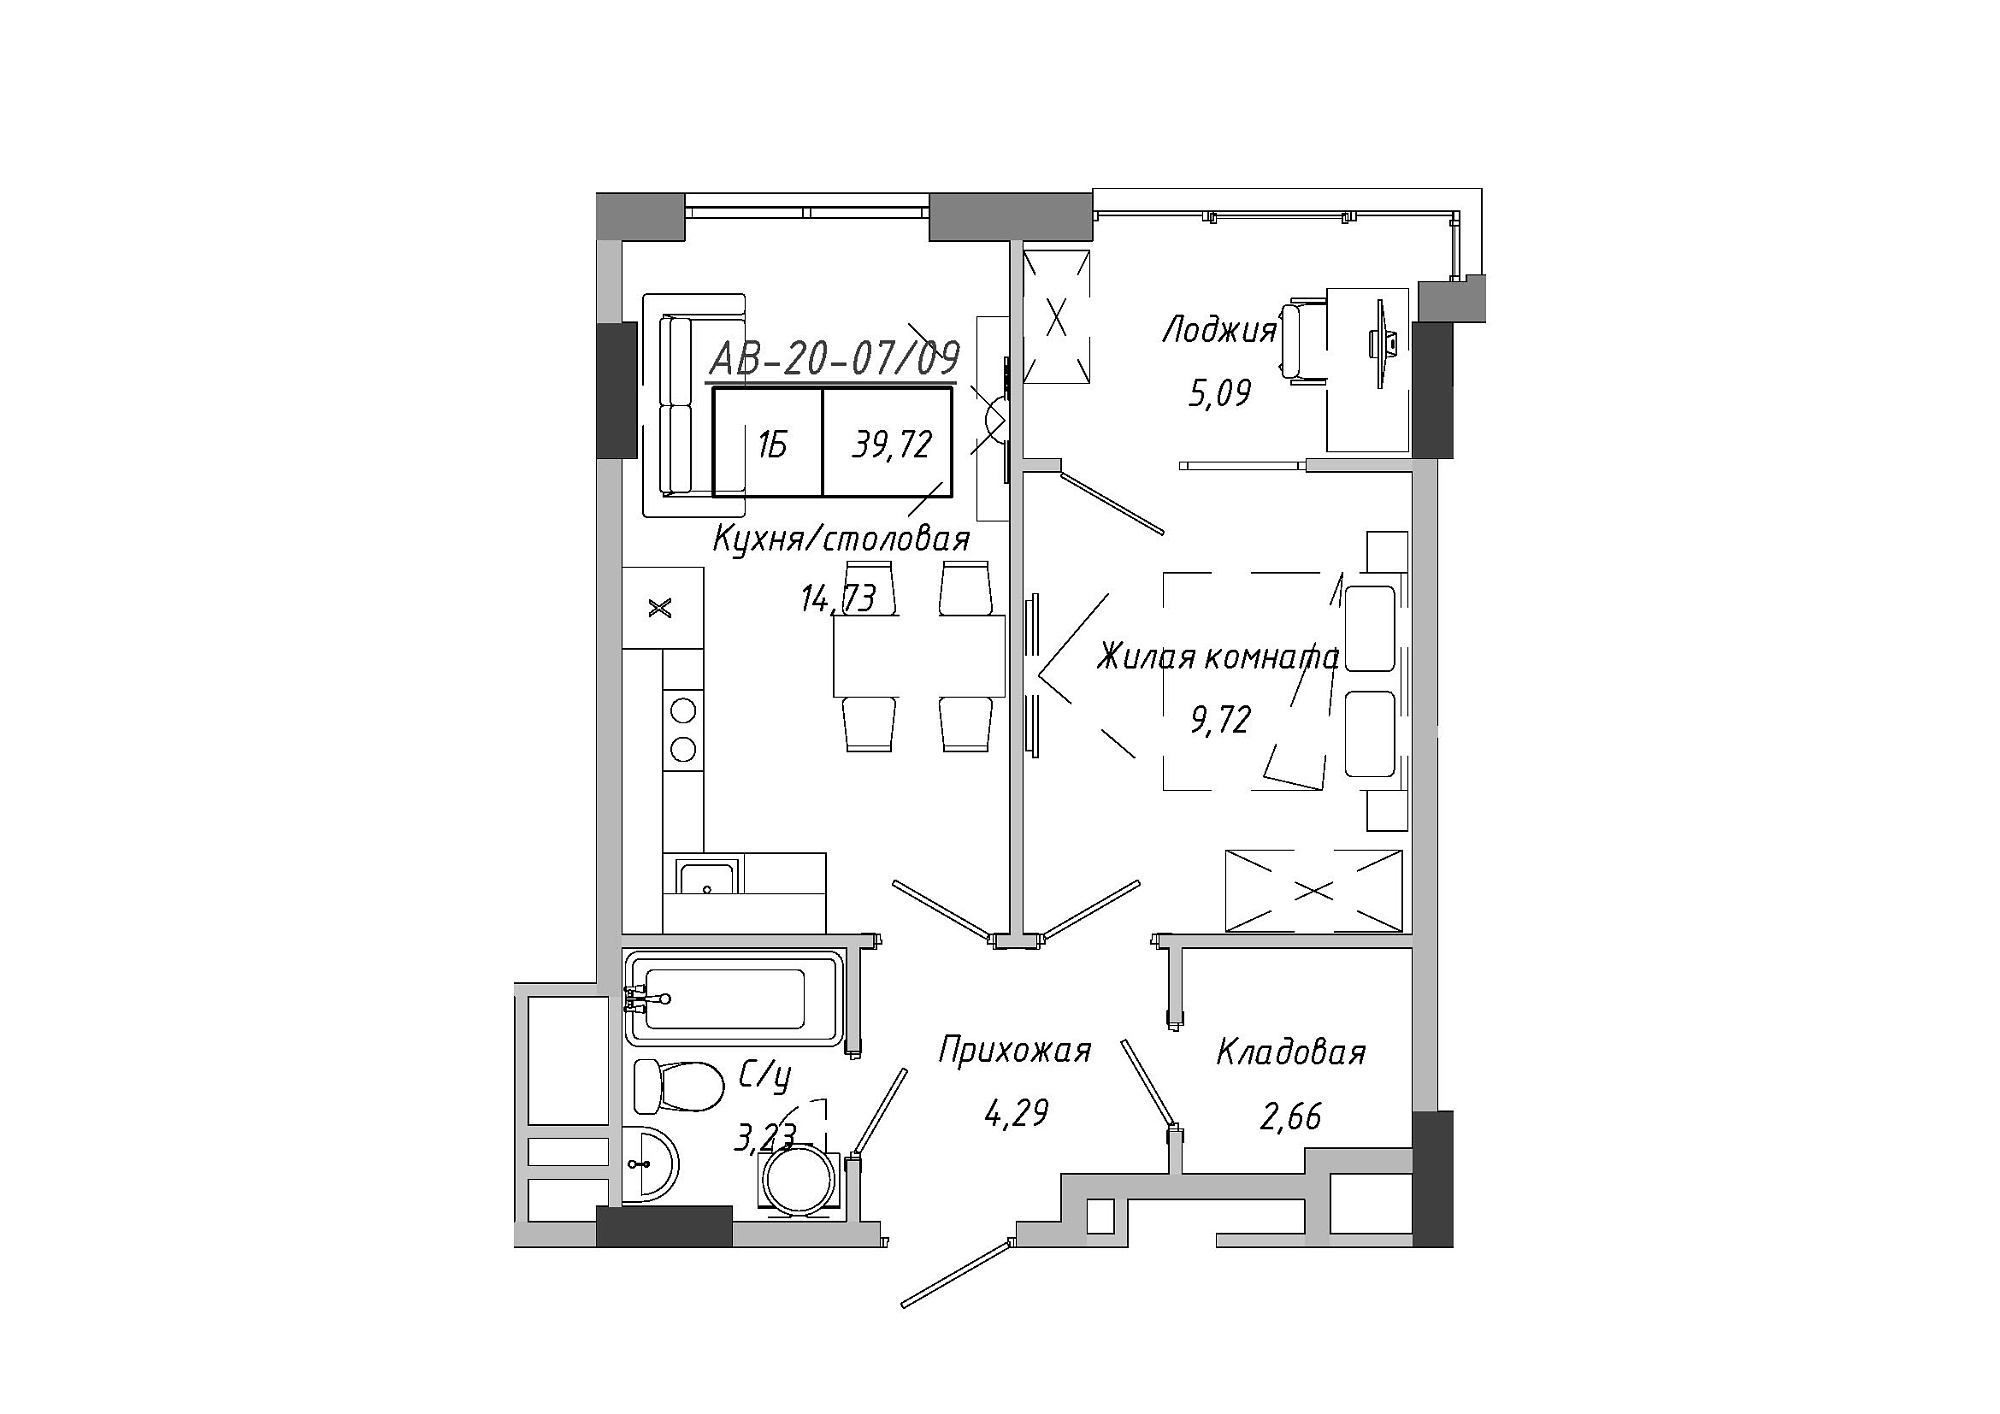 Планировка 1-к квартира площей 37.59м2, AB-20-07/00009.